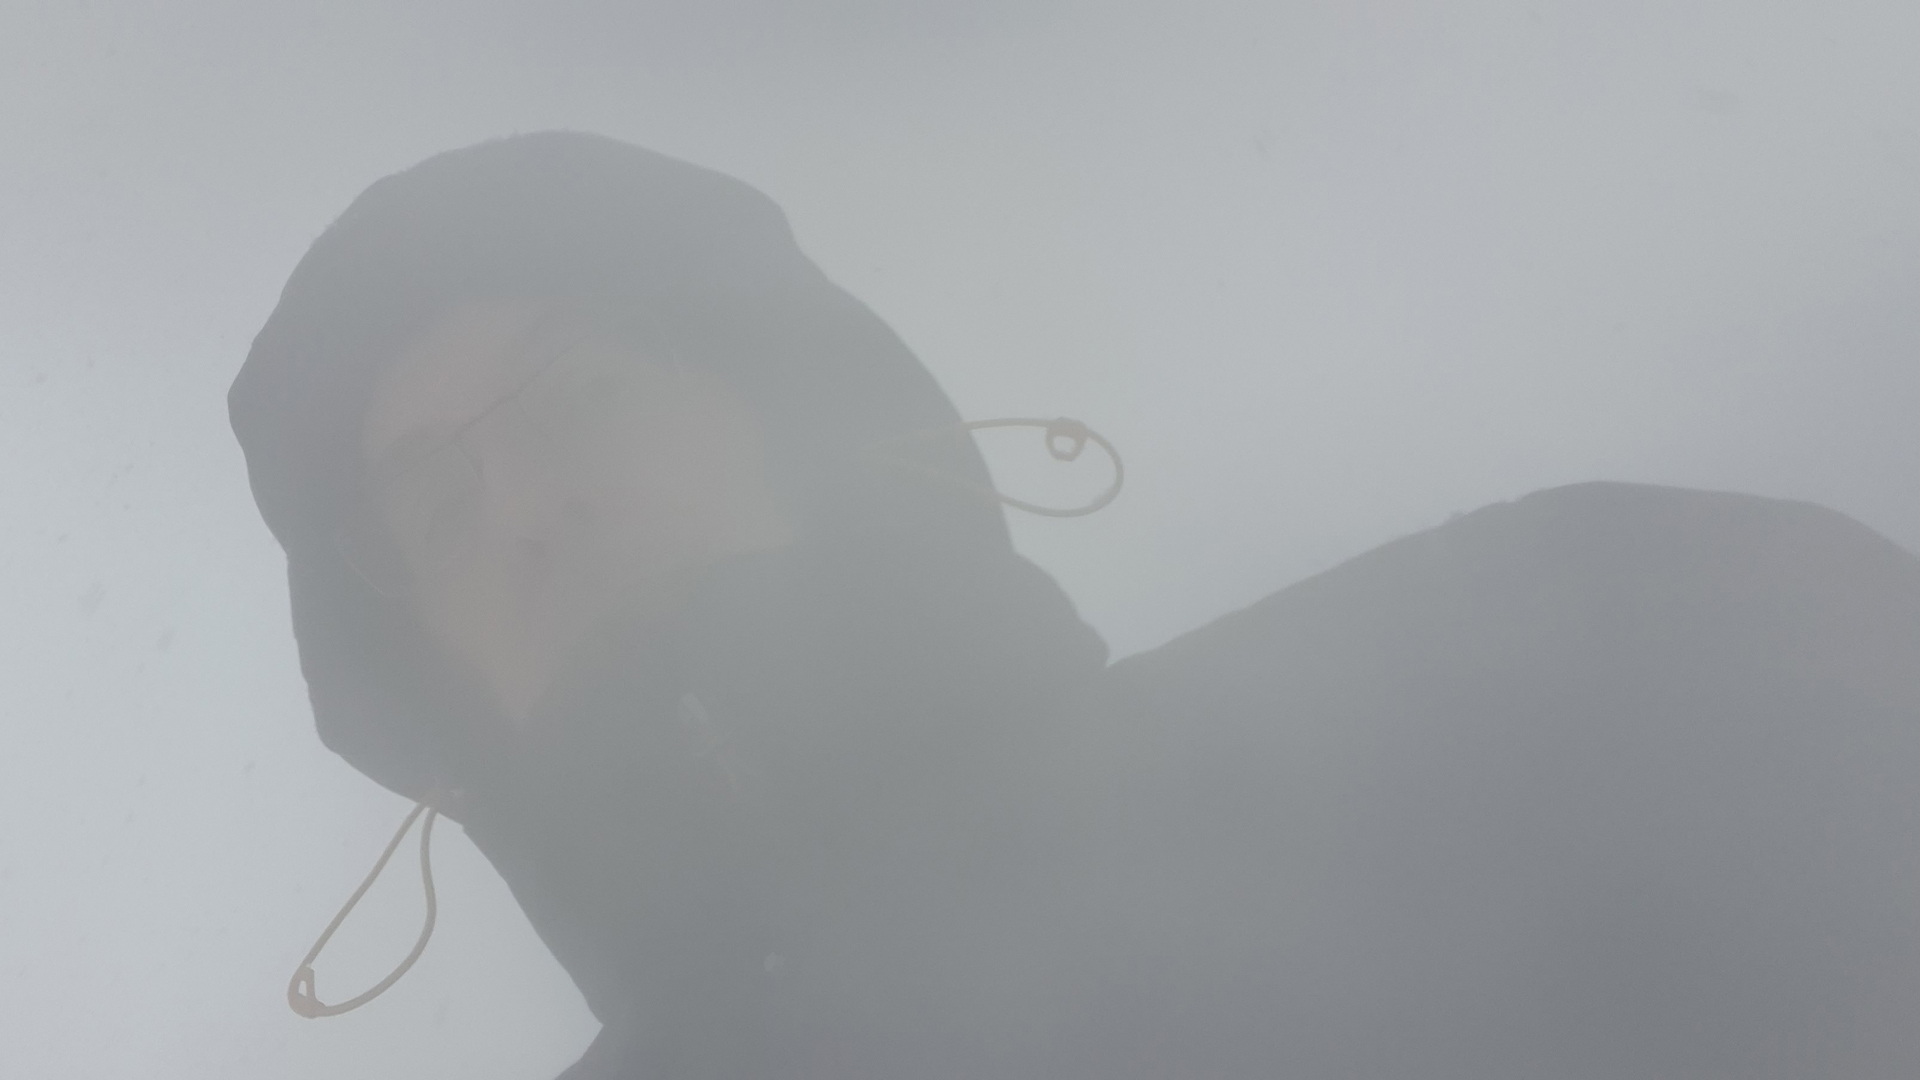 Fotostrecke Nebel Abbildung 14